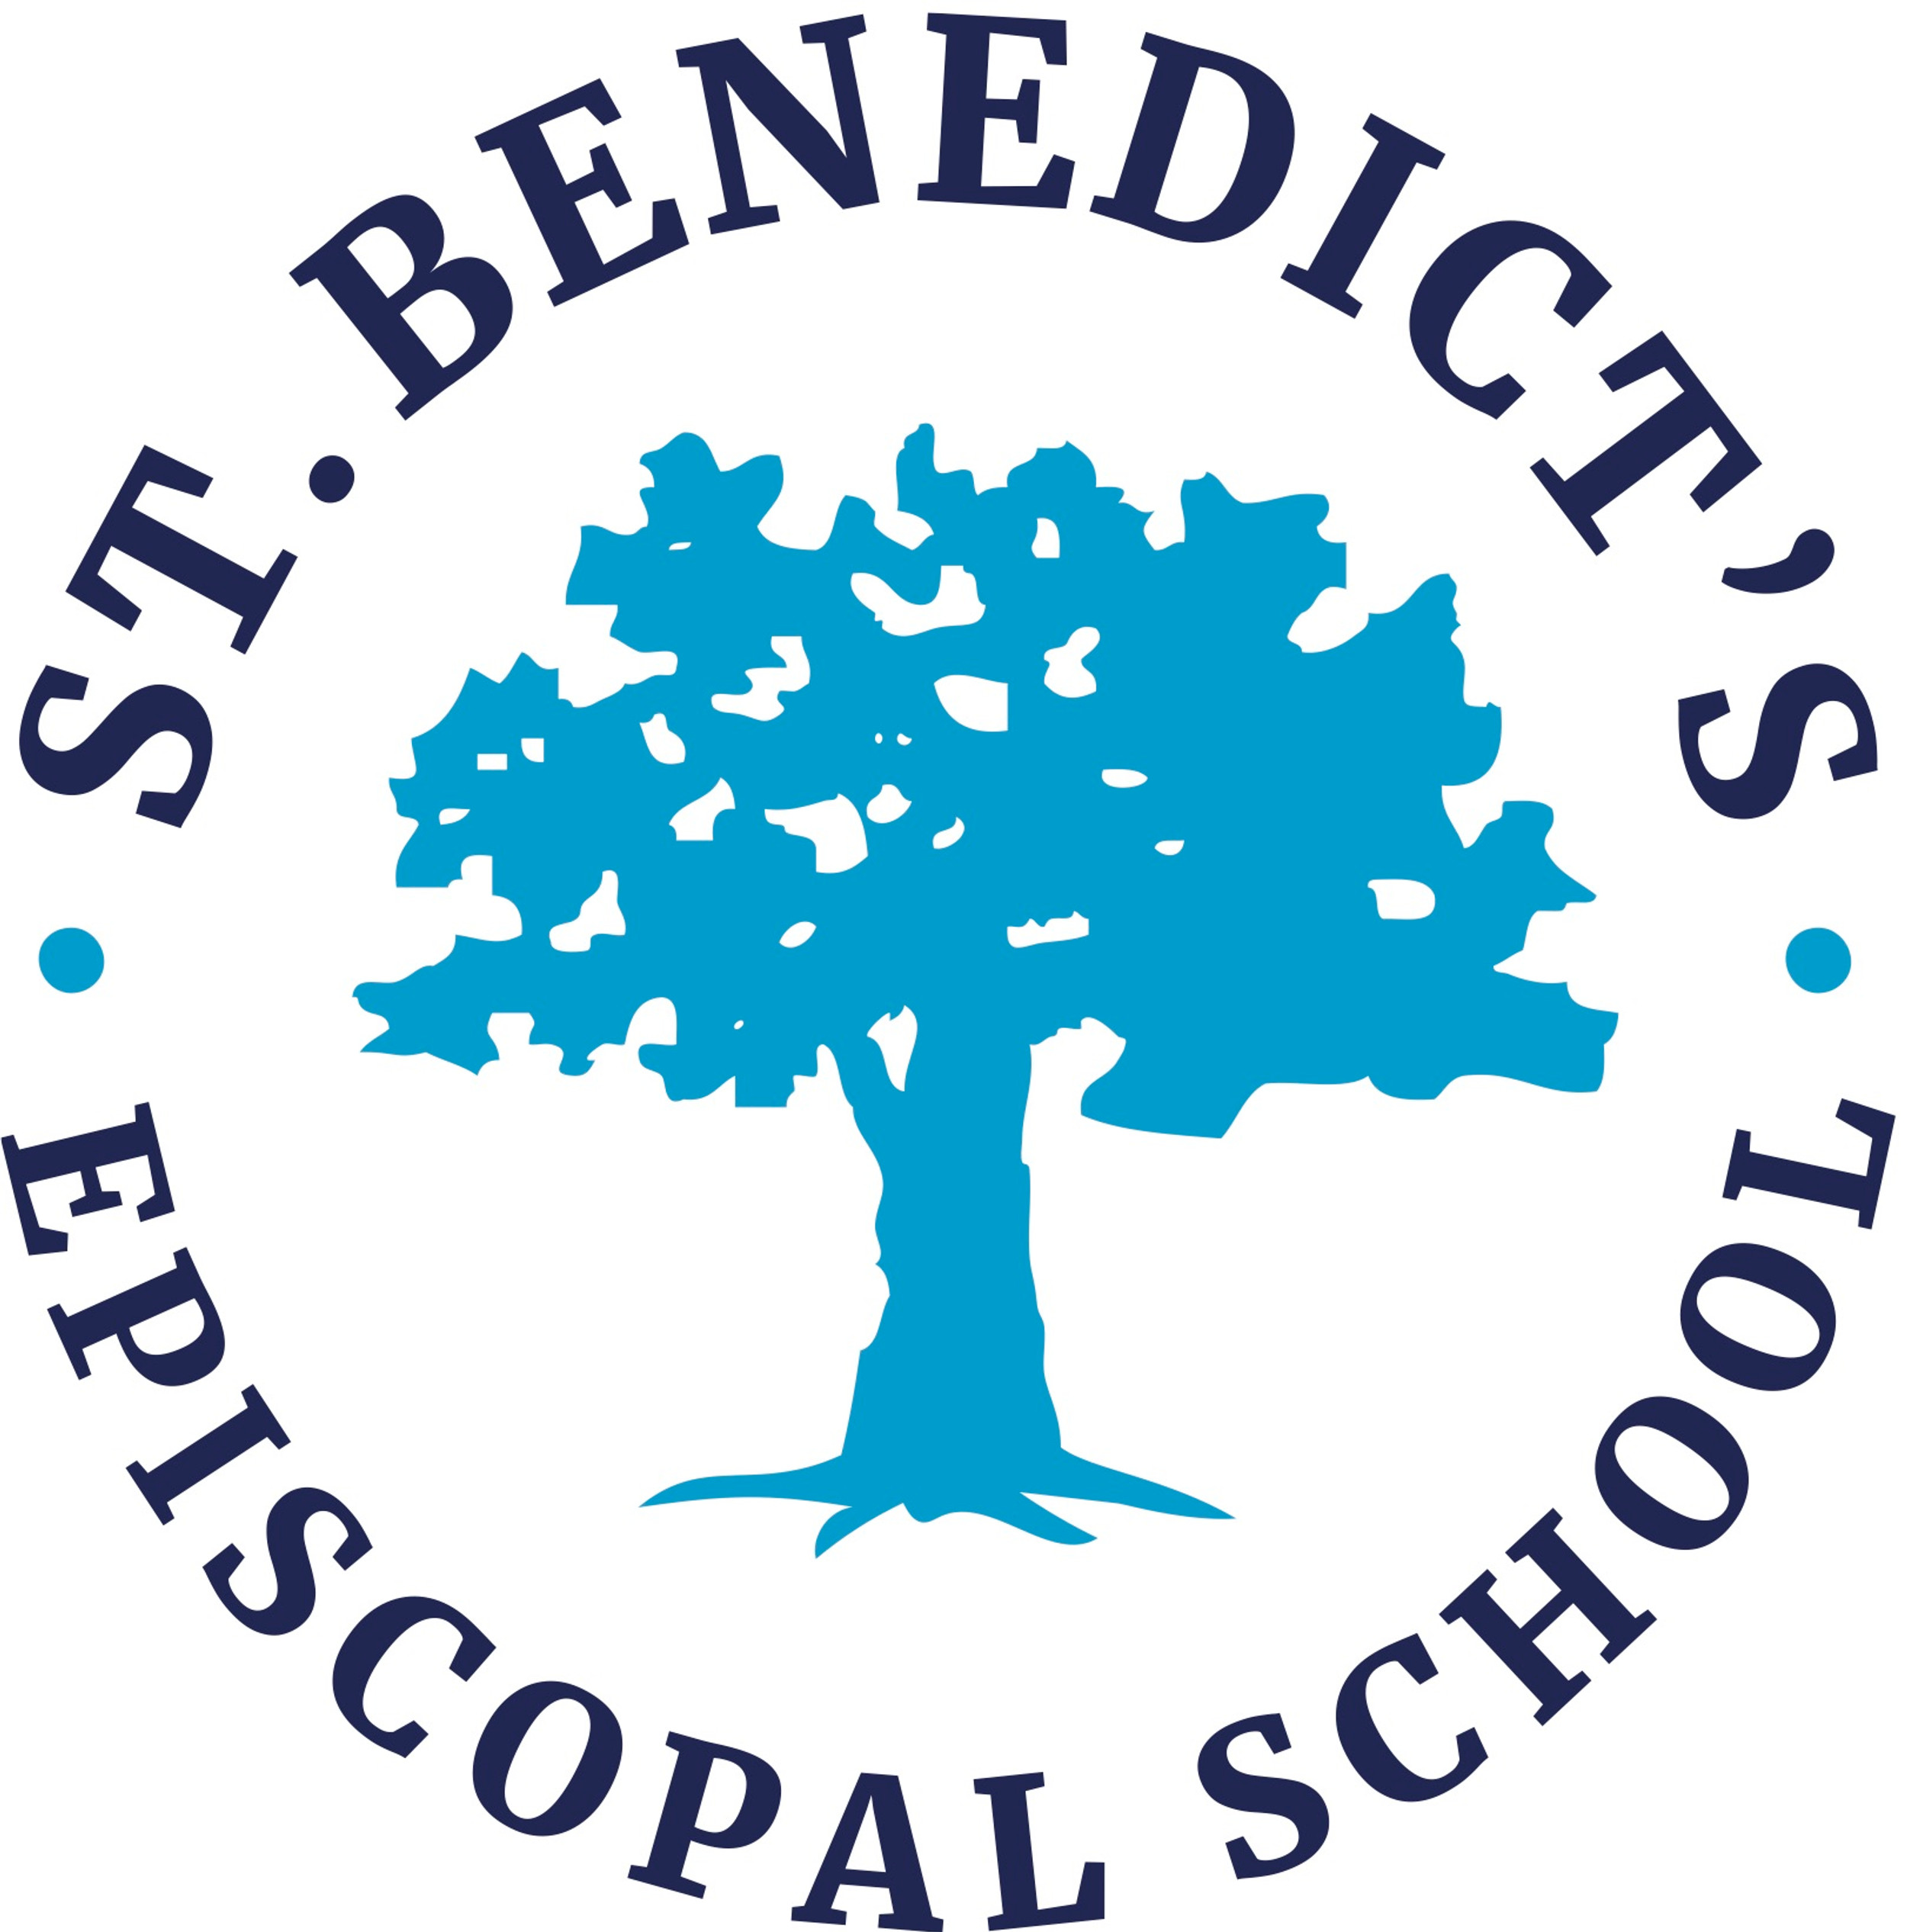 St. Benedict’s Episcopal School